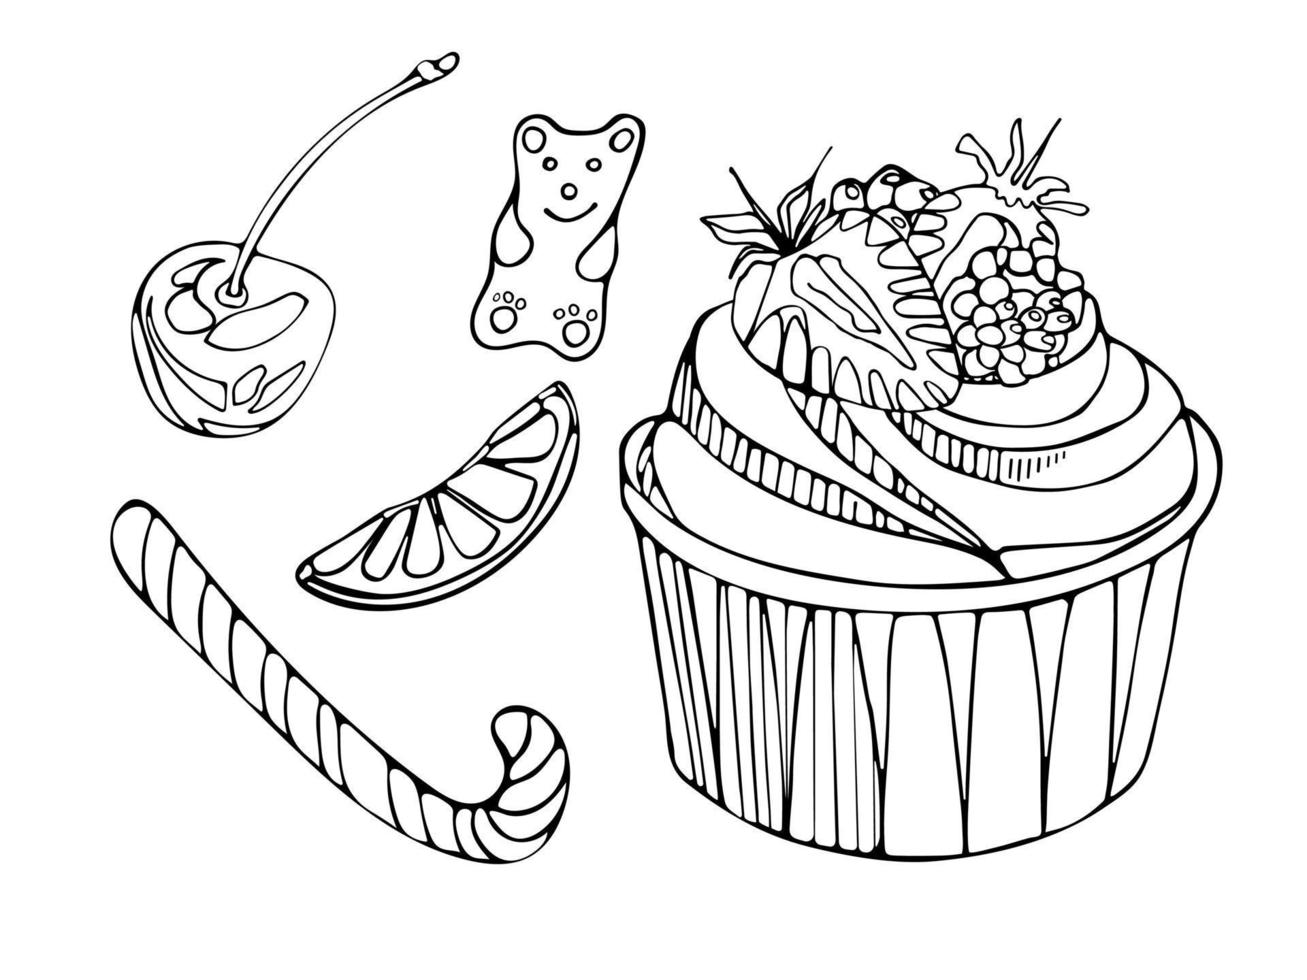 um conjunto de cupcake de doces deliciosos com morangos, ursinho de goma, cana-de-açúcar, frutas, cerejas. dia nacional do cupcake. ilustração em vetor doodle de comida de sobremesa. para menu, livro de receitas, cartão postal, cartaz.